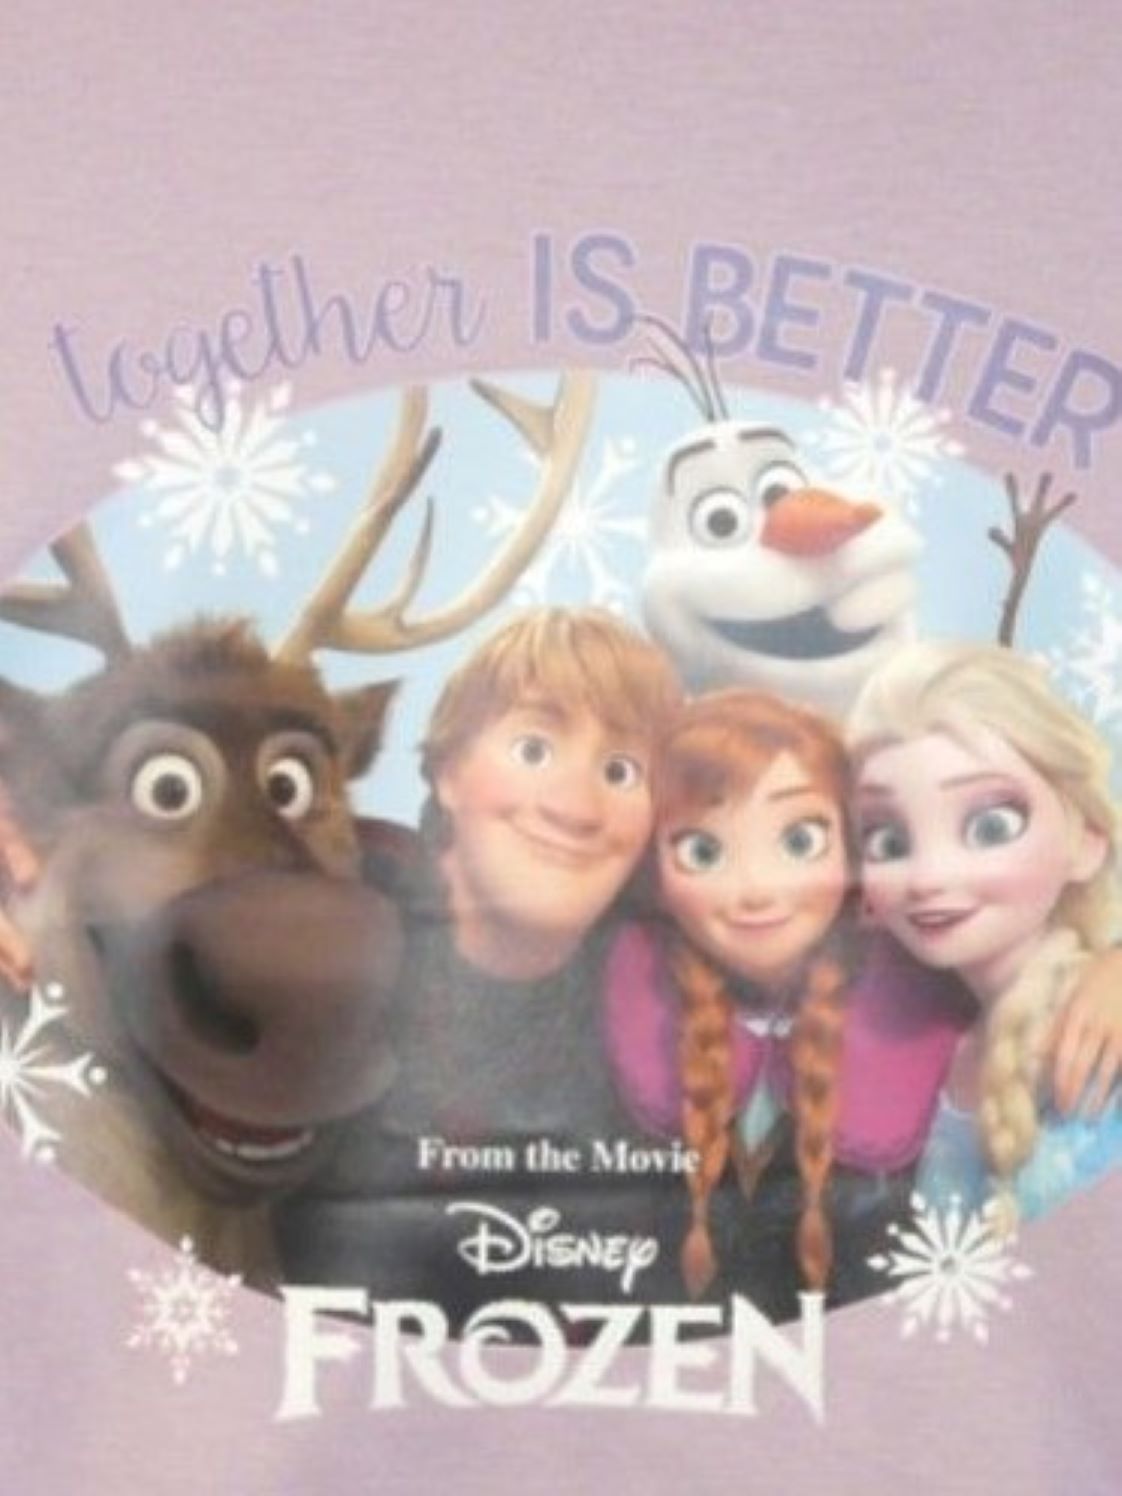 Disney Frozen "Together is Better" Girl's Pyjamas